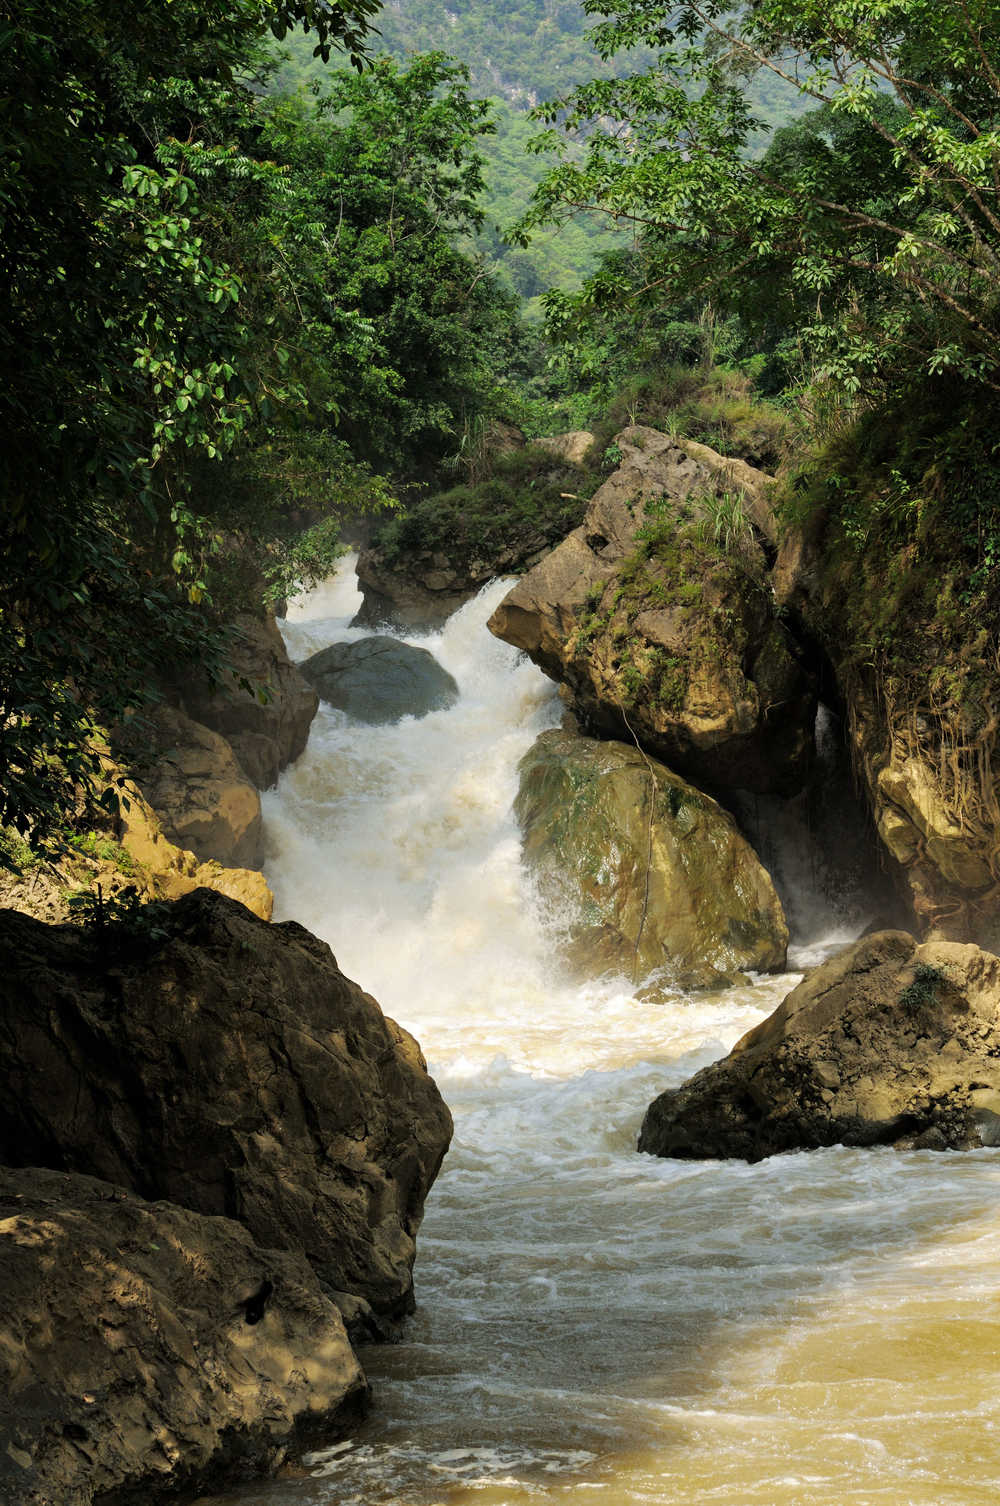 Cascade du parc national de Ba Be au Vietnam